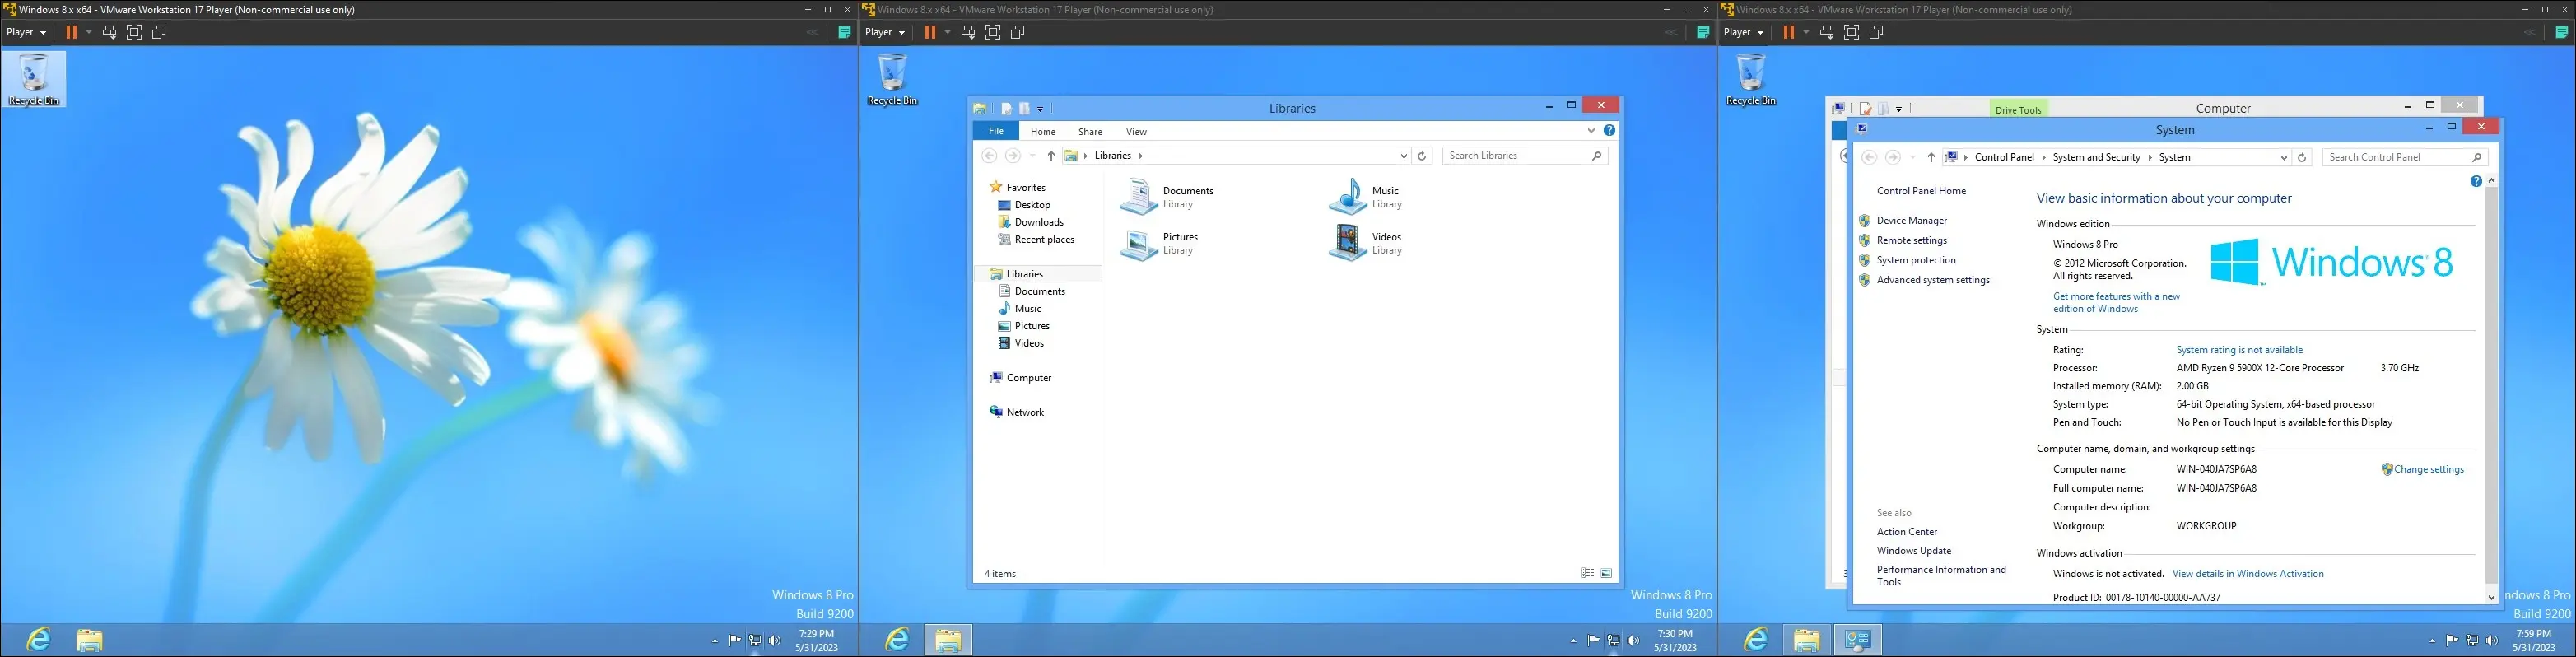 รูปภาพของ Windows 8 บนเครื่องเสมือน แสดงเดสก์ท็อป อินเทอร์เฟซ explorer และ "หน้าเกี่ยวกับคอมพิวเตอร์"